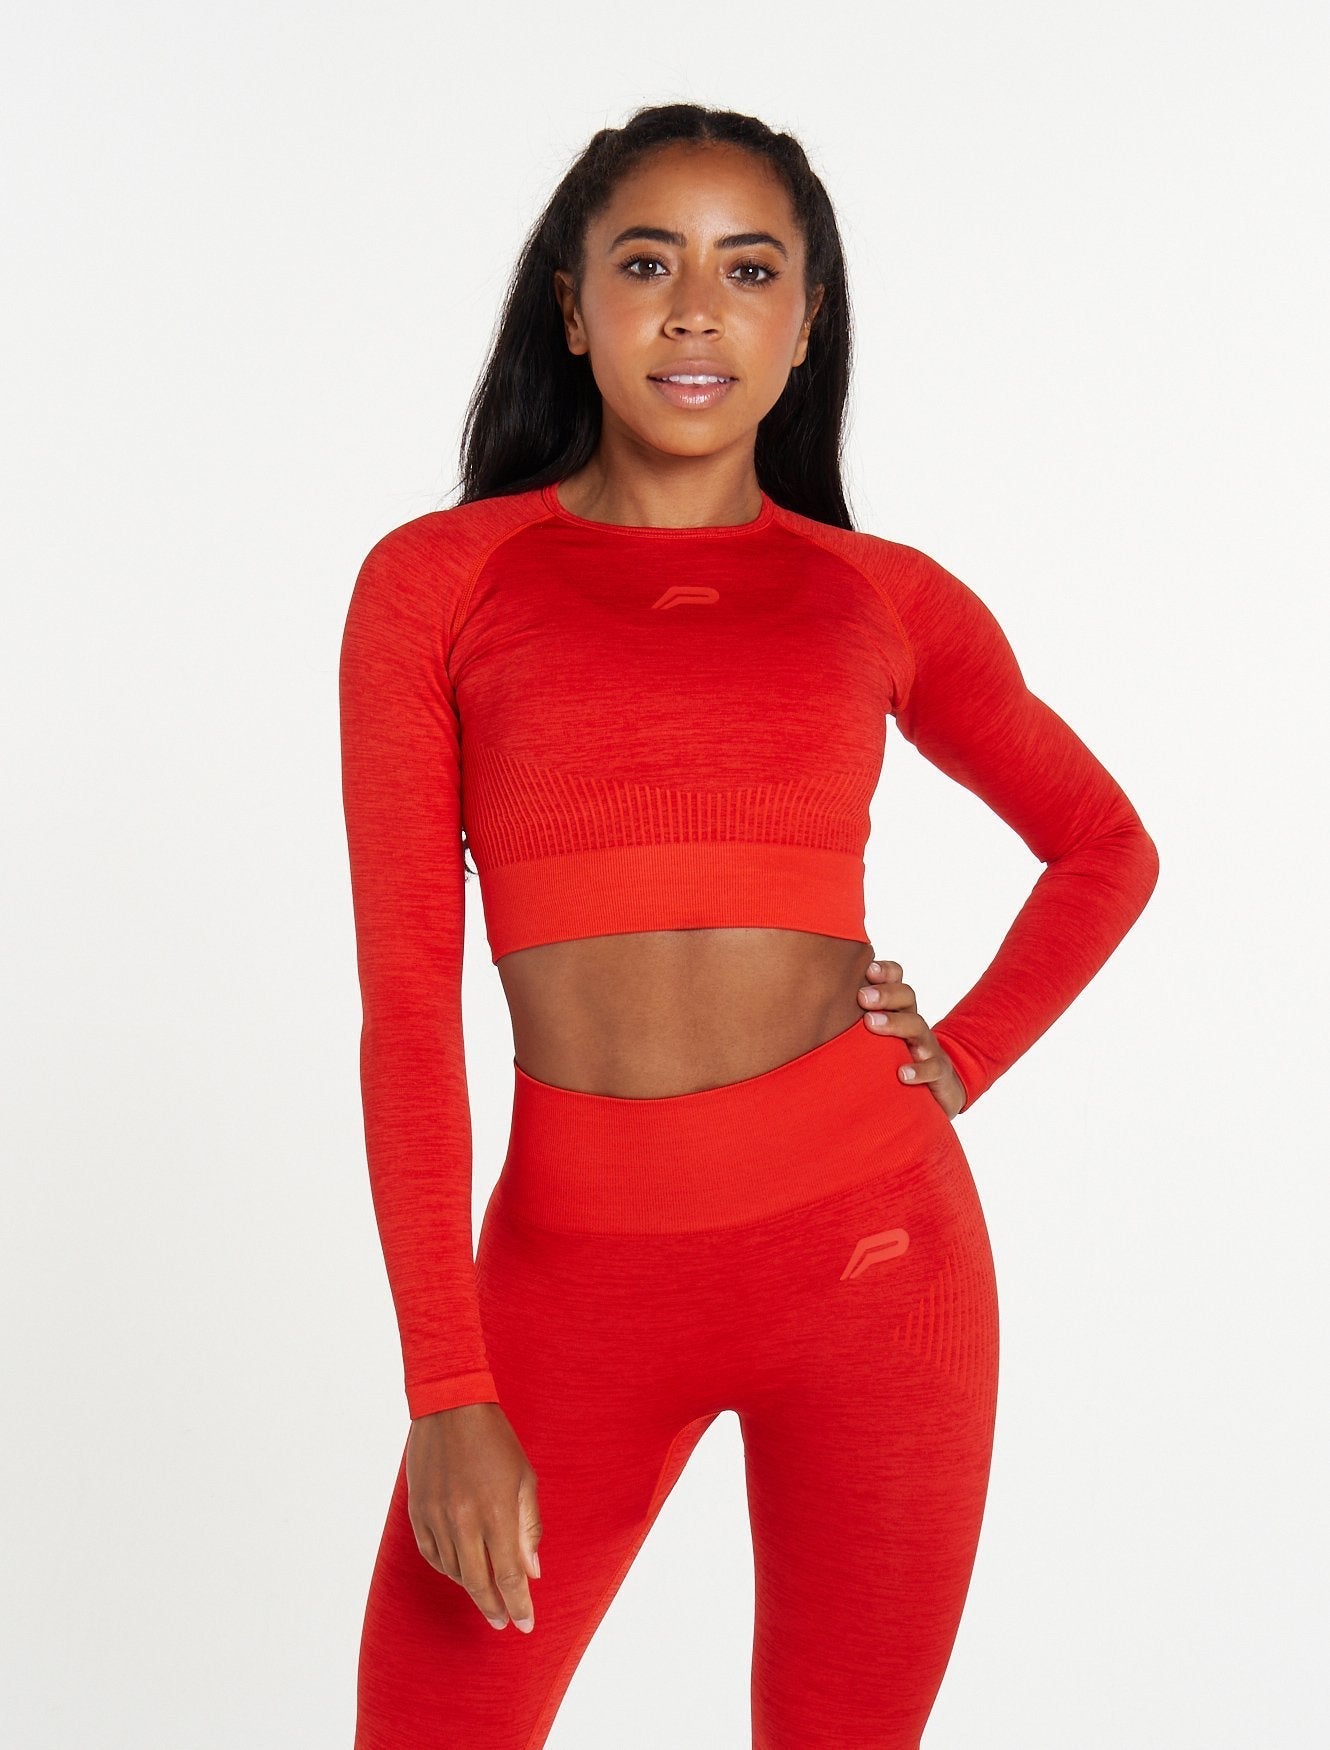 Buy Fitleasure Women's Athleisure Red Crop Top online